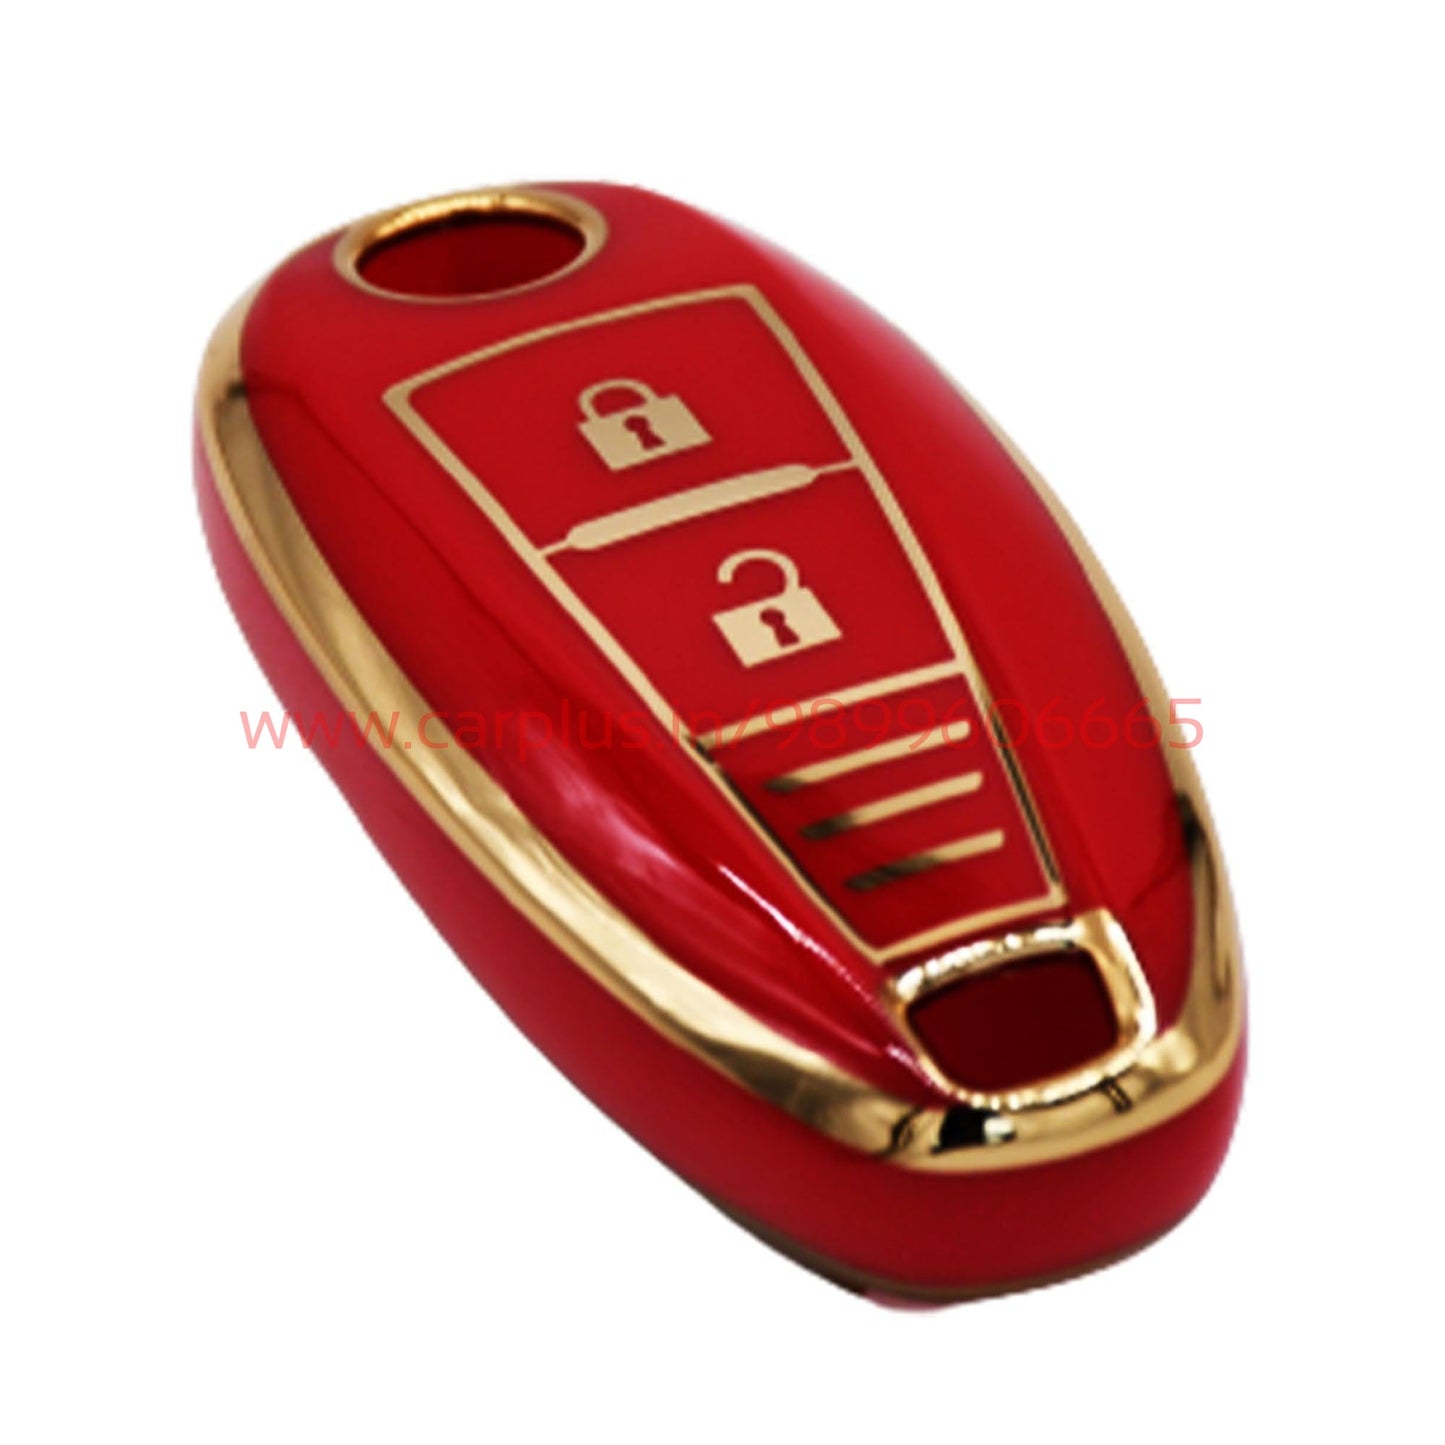 
                  
                    KMH - TPU Gold Car Key Cover Compatible for Maruti Suzuki Baleno | Brezza | Swift| Ignis Compatible with 2 Button Smart Key Cover-TPU GOLD KEY COVER-KMH-KEY COVER-Red-CARPLUS
                  
                